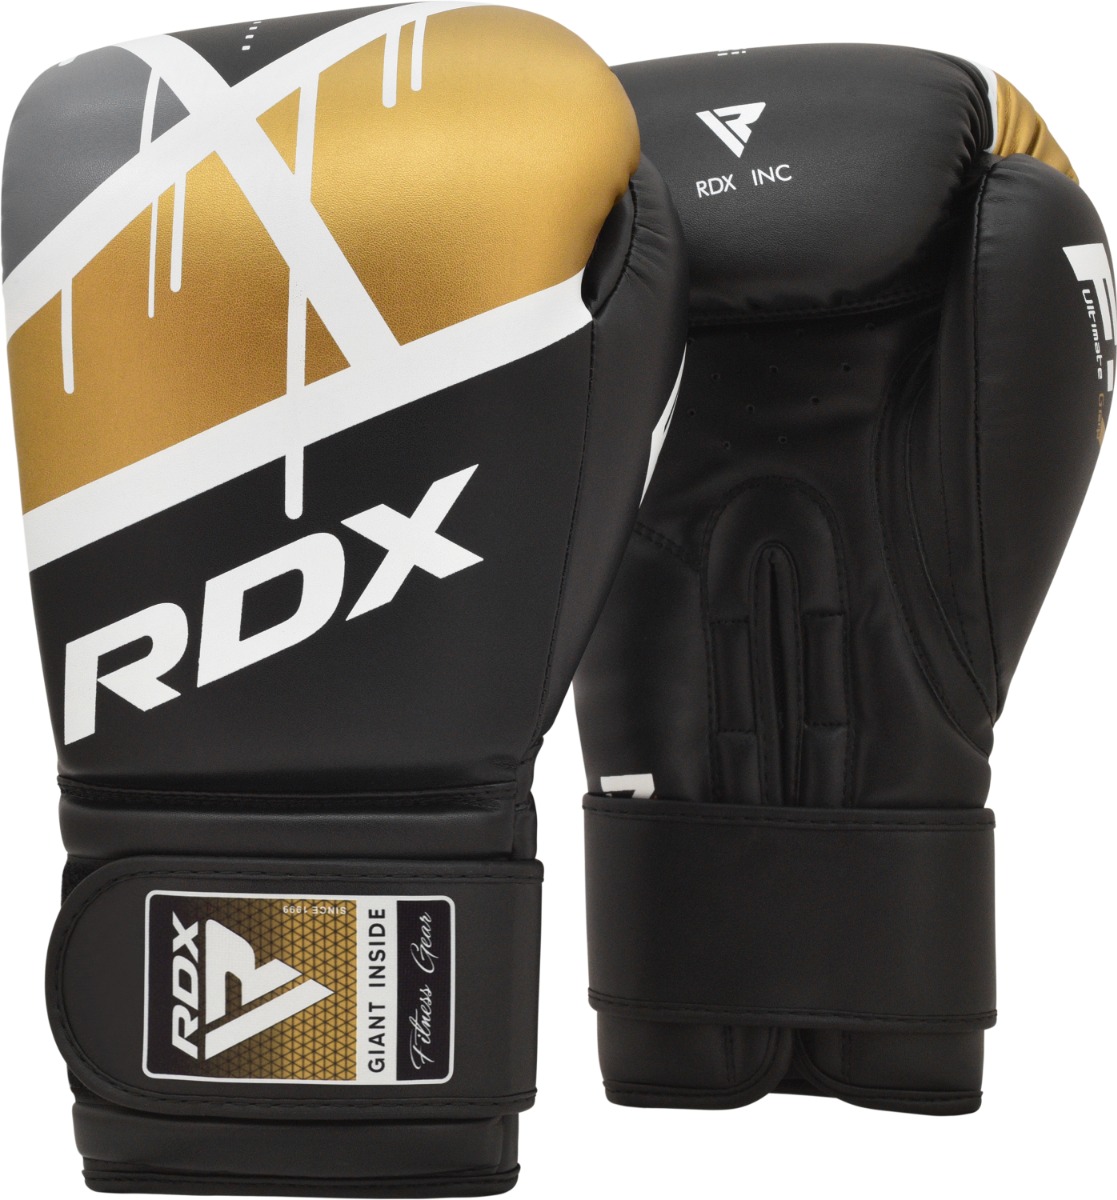 RDX F7 Trainings Boxhandschuhe Haken Und Schleife 8oz Schwarz/Golden